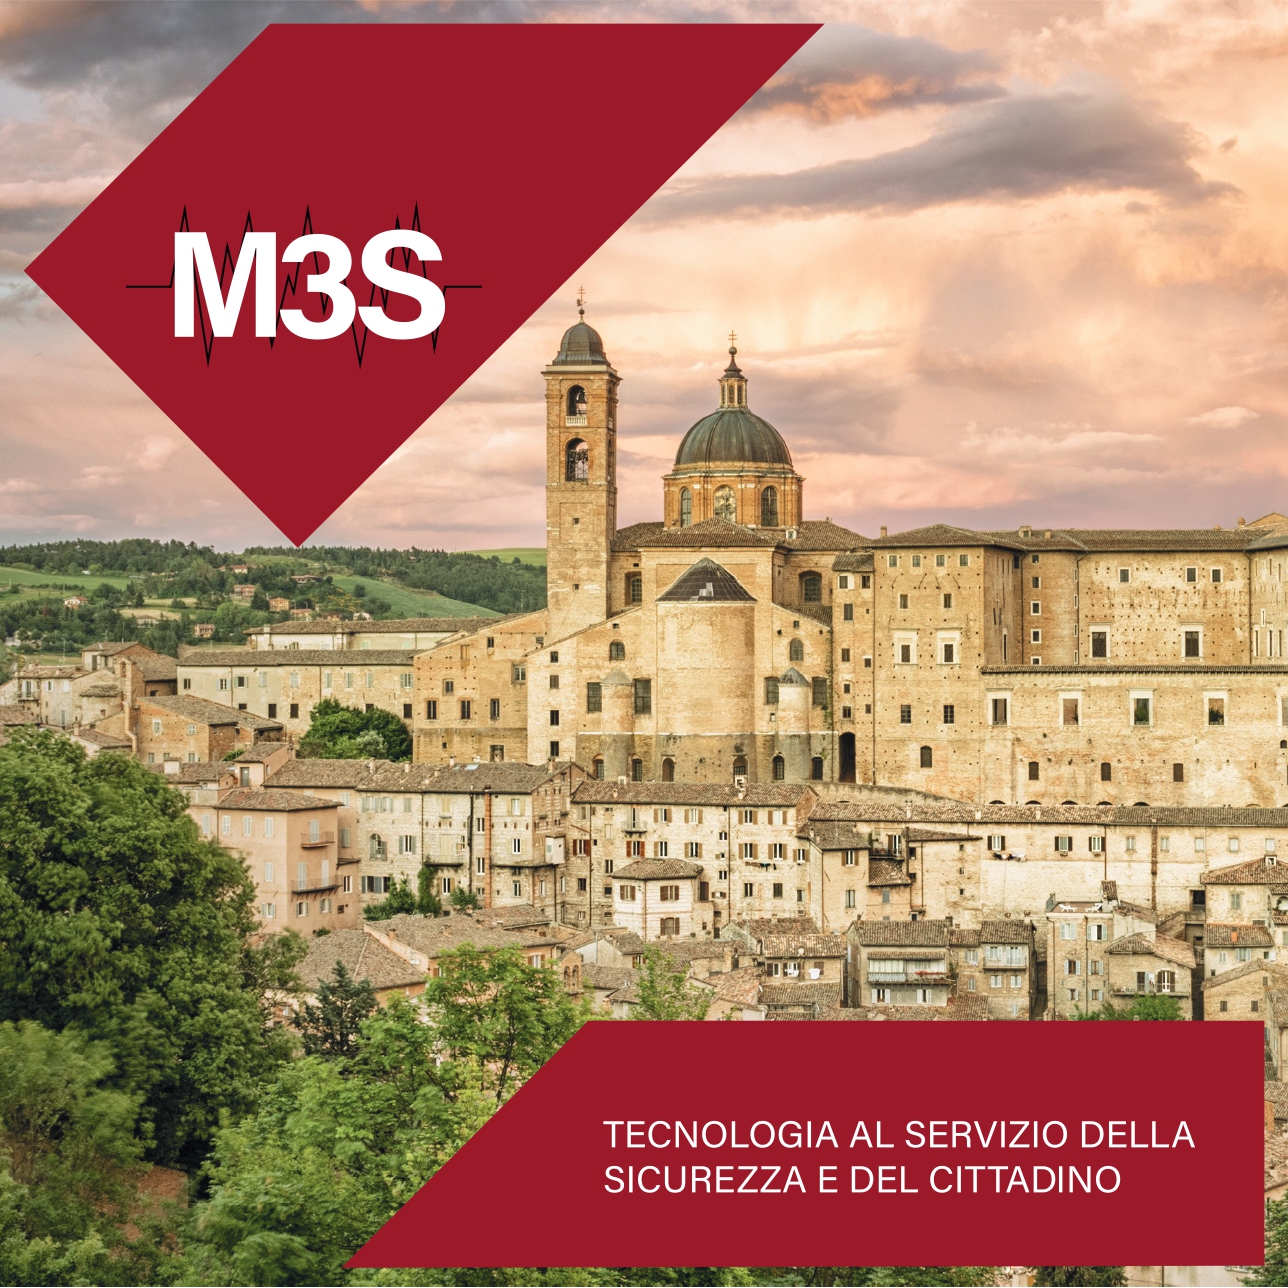 M3S ed ANCI protagonisti della salvaguardia del Patrimonio Immobiliare ed Infrastrutturale Italiano